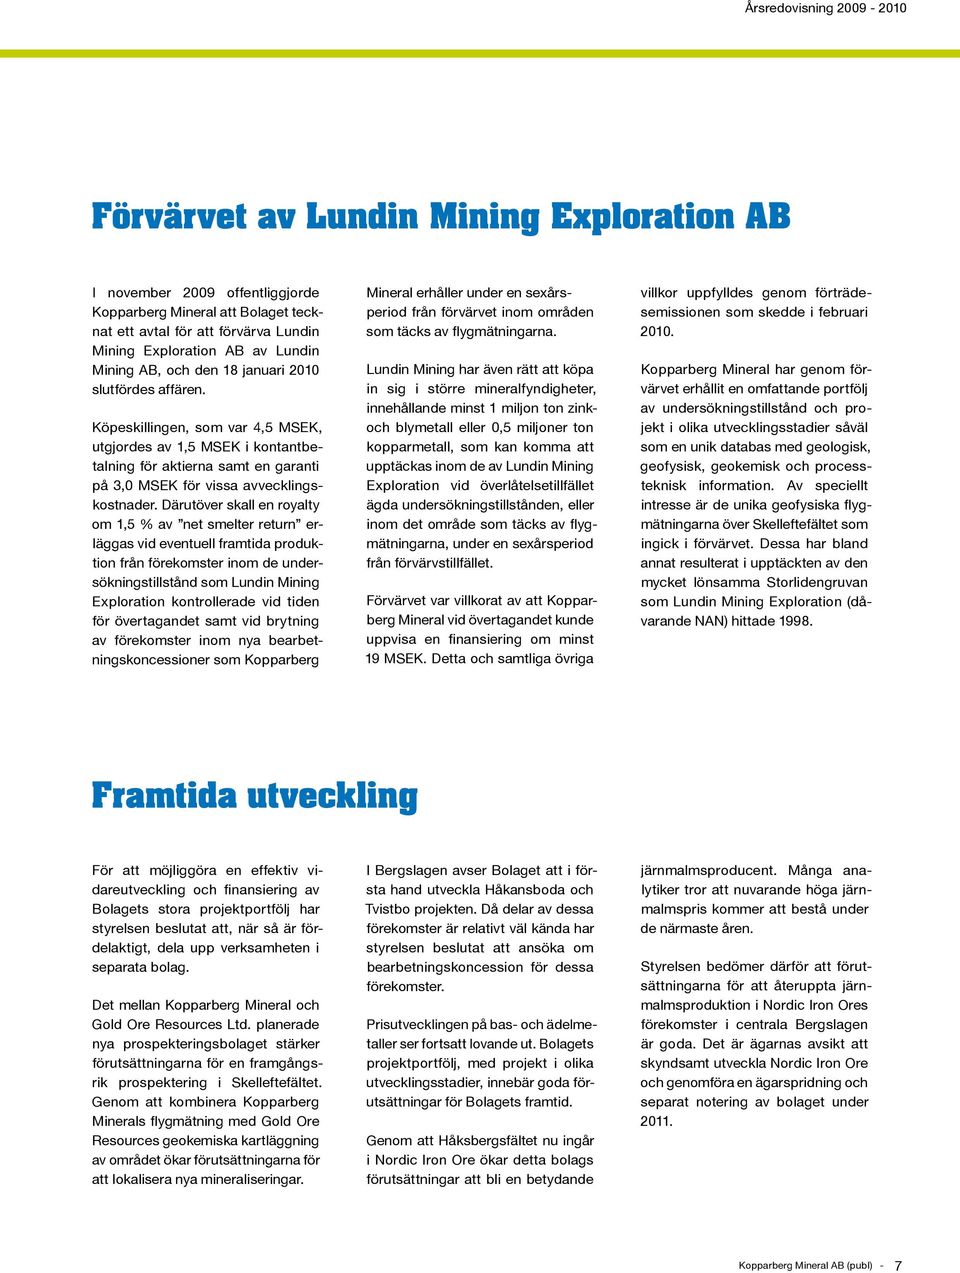 Därutöver skall en royalty om 1,5 % av net smelter return erläggas vid eventuell framtida produktion från förekomster inom de undersökningstillstånd som Lundin Mining Exploration kontrollerade vid